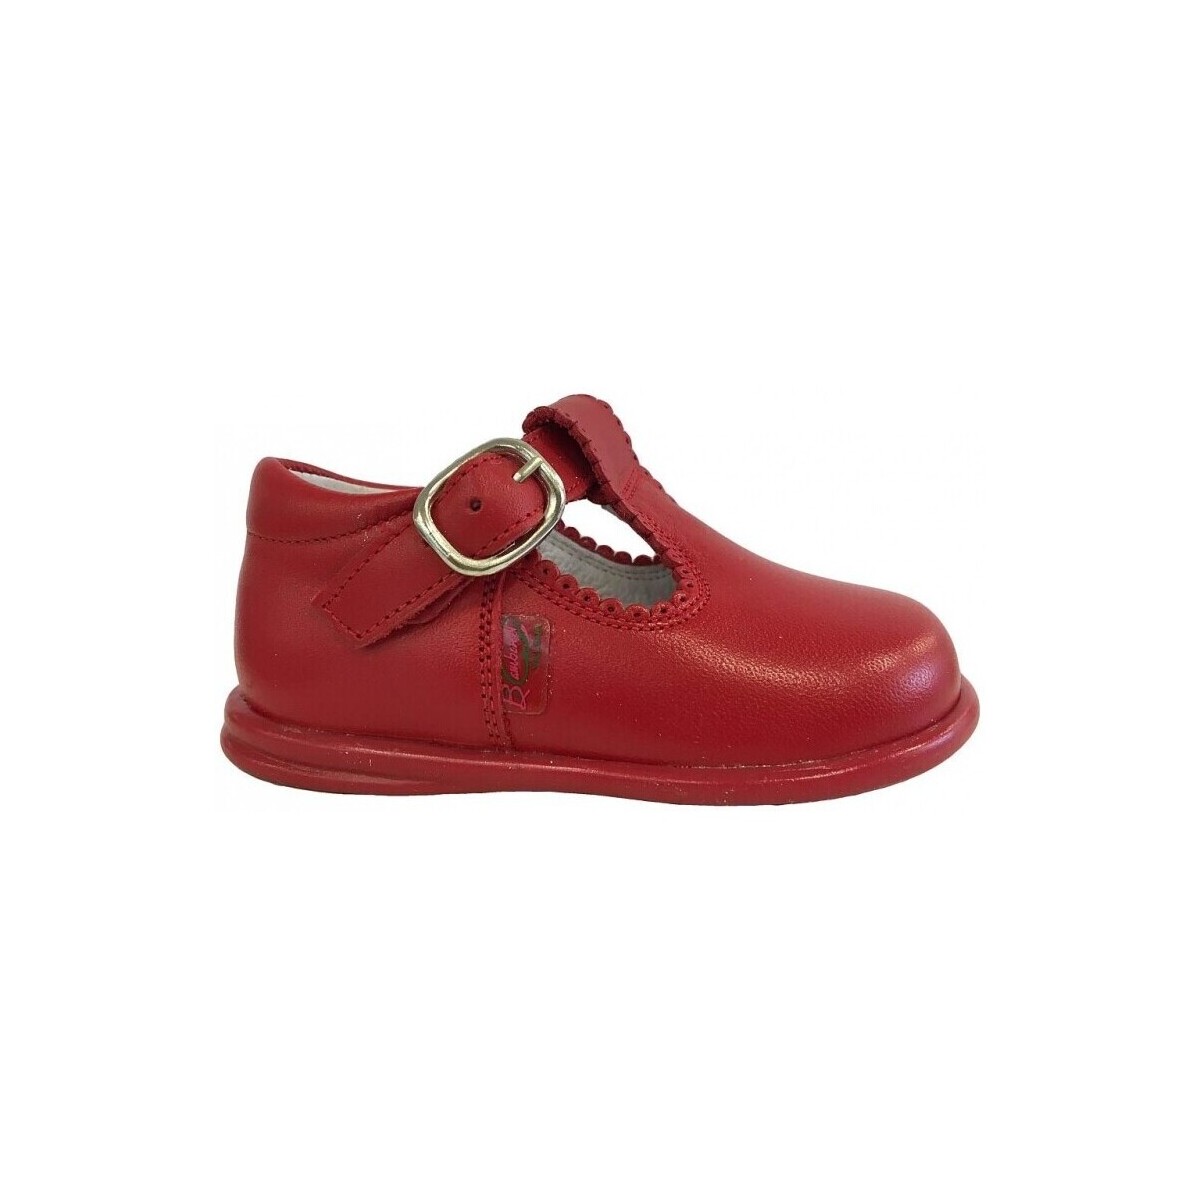 Schuhe Sandalen / Sandaletten Bambineli 13058-18 Rot